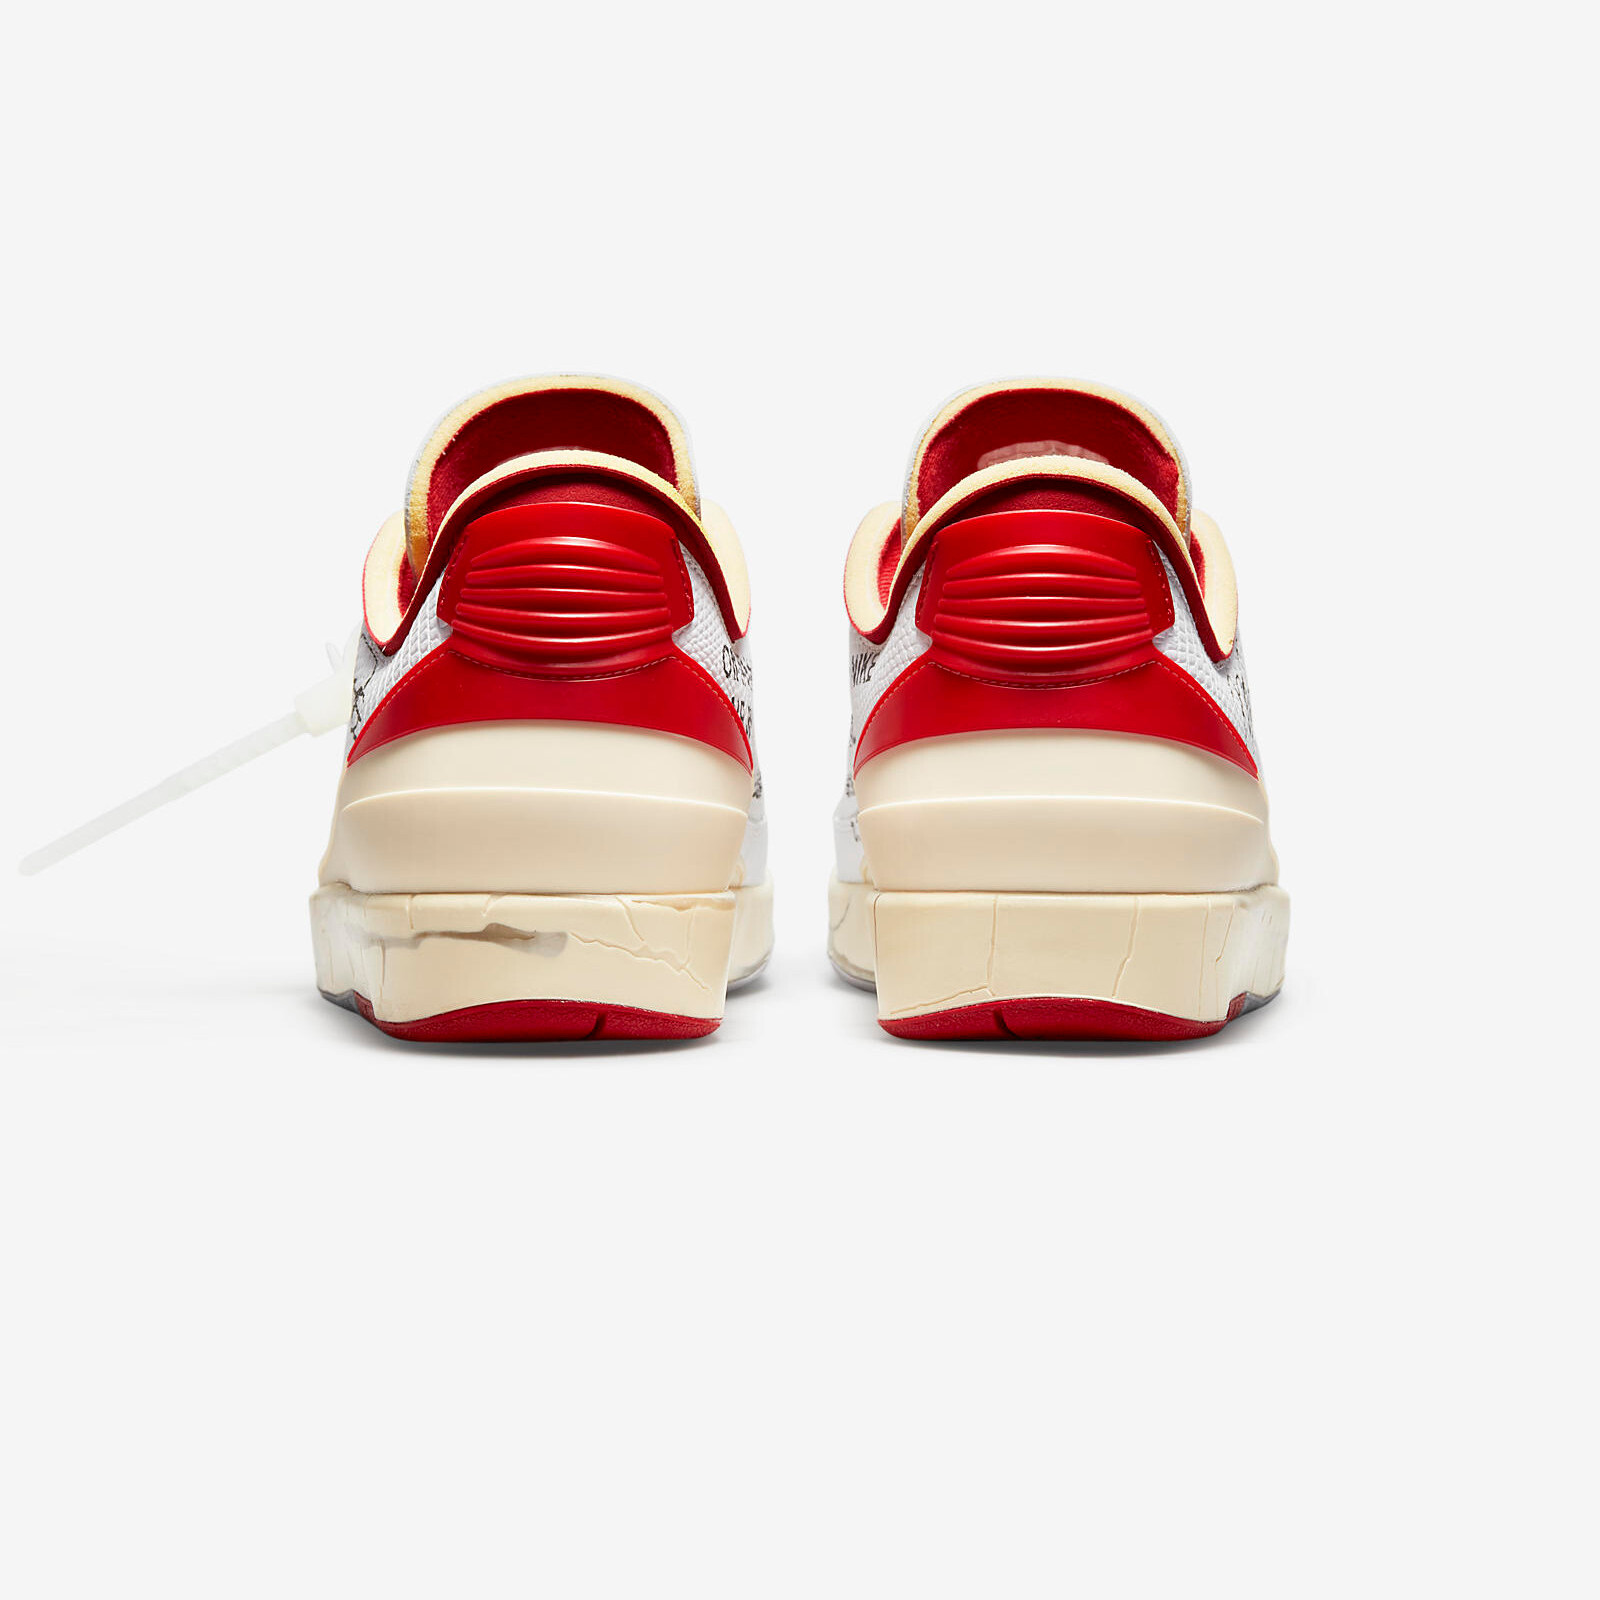 Nike x Off-White
Air Jordan 2 Low
White / Varsity Red